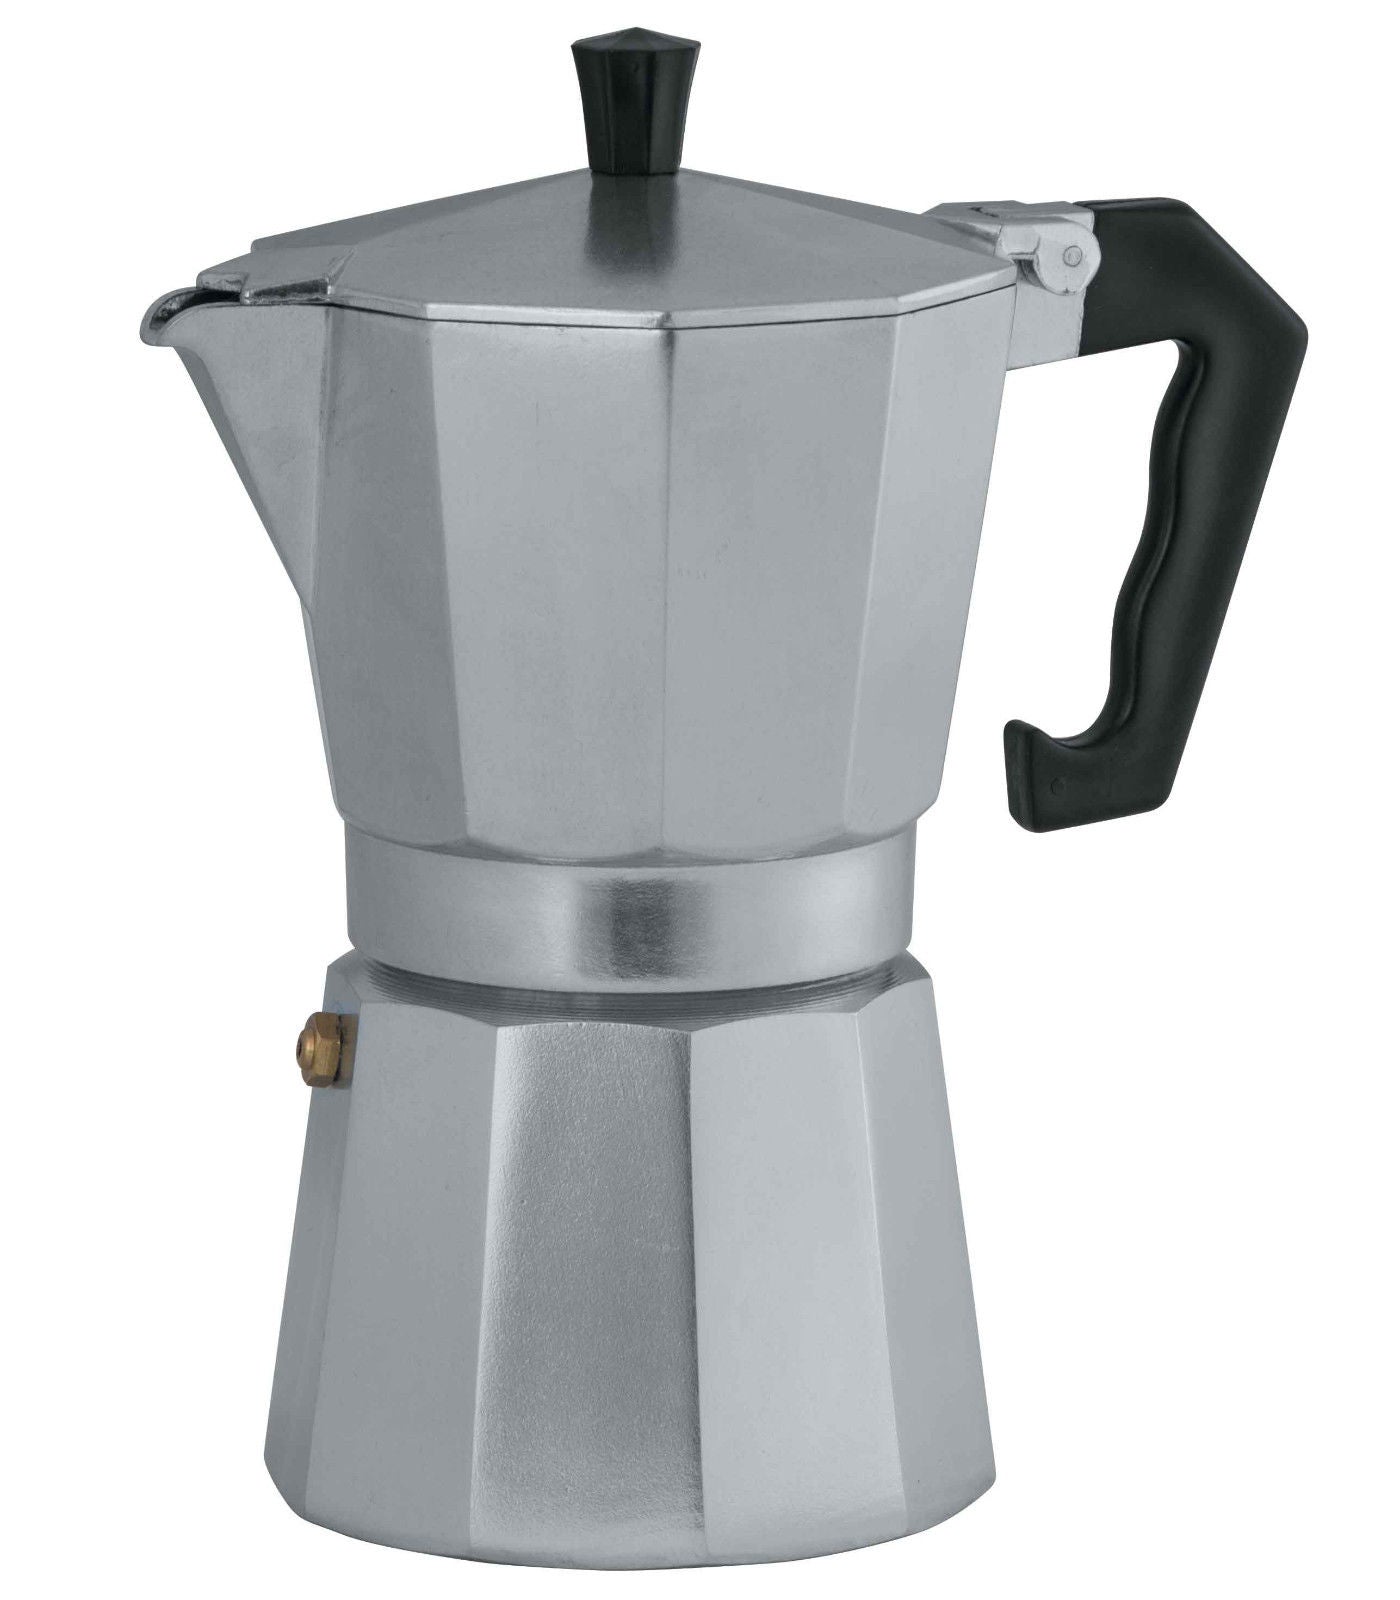 Avanti Classic Pro Espresso Coffee Maker 12 Cup - 1200ml